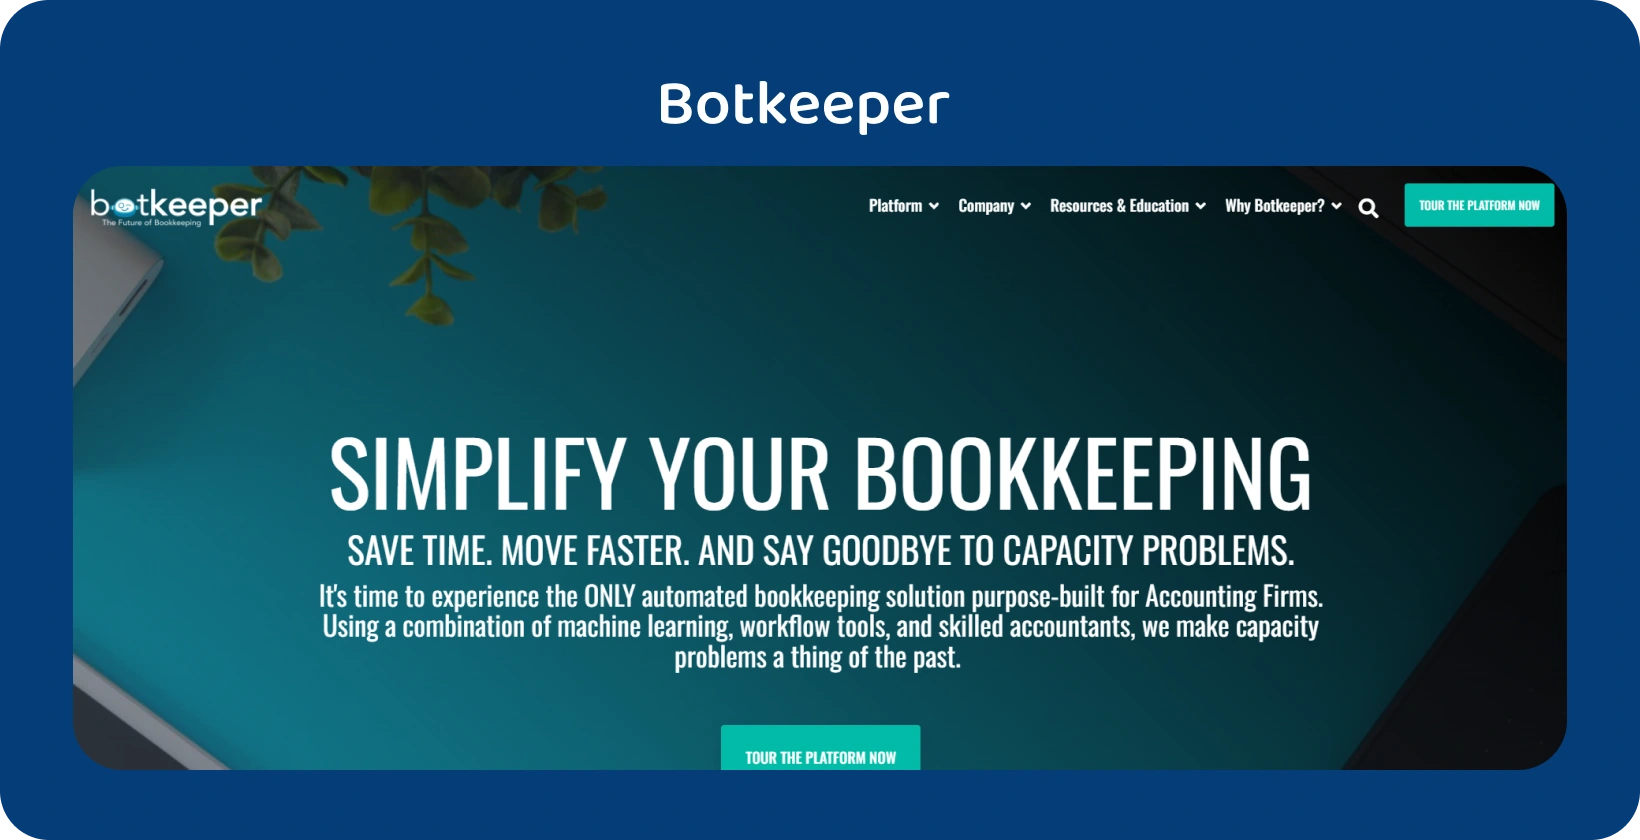 La homepage di Botkeeper evidenzia la semplificazione della contabilità per i contabili attraverso la sua tecnologia di automazione.